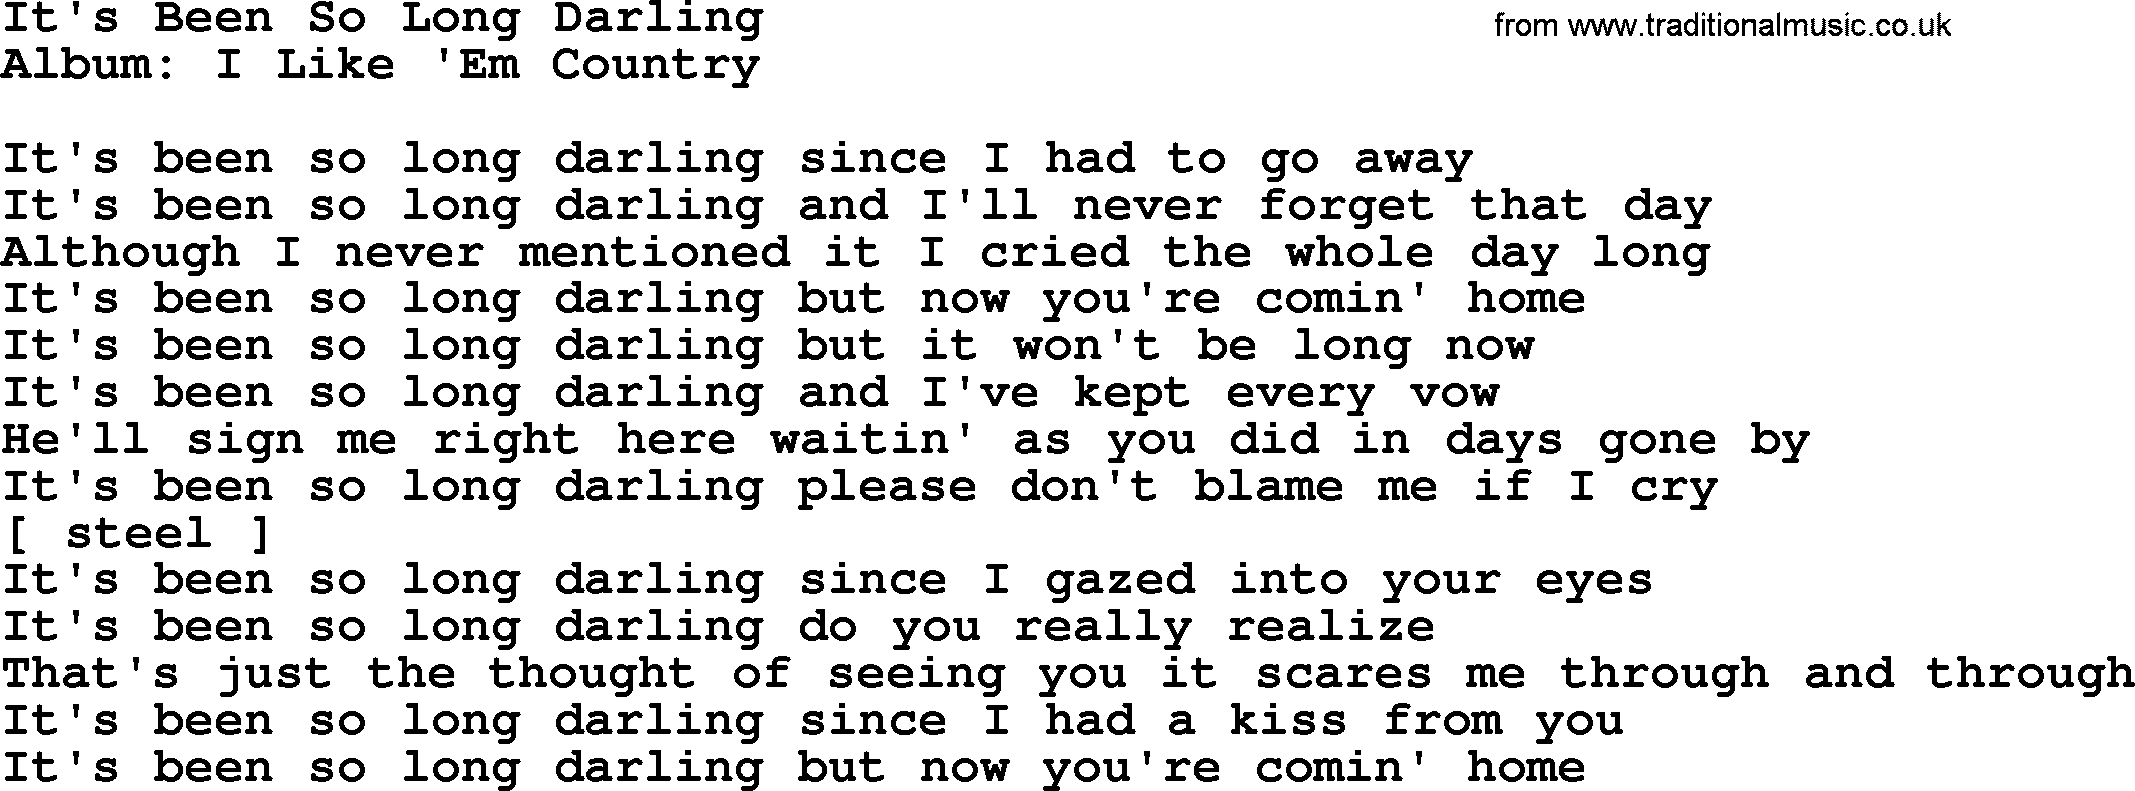 Loretta Lynn song: It's Been So Long Darling lyrics